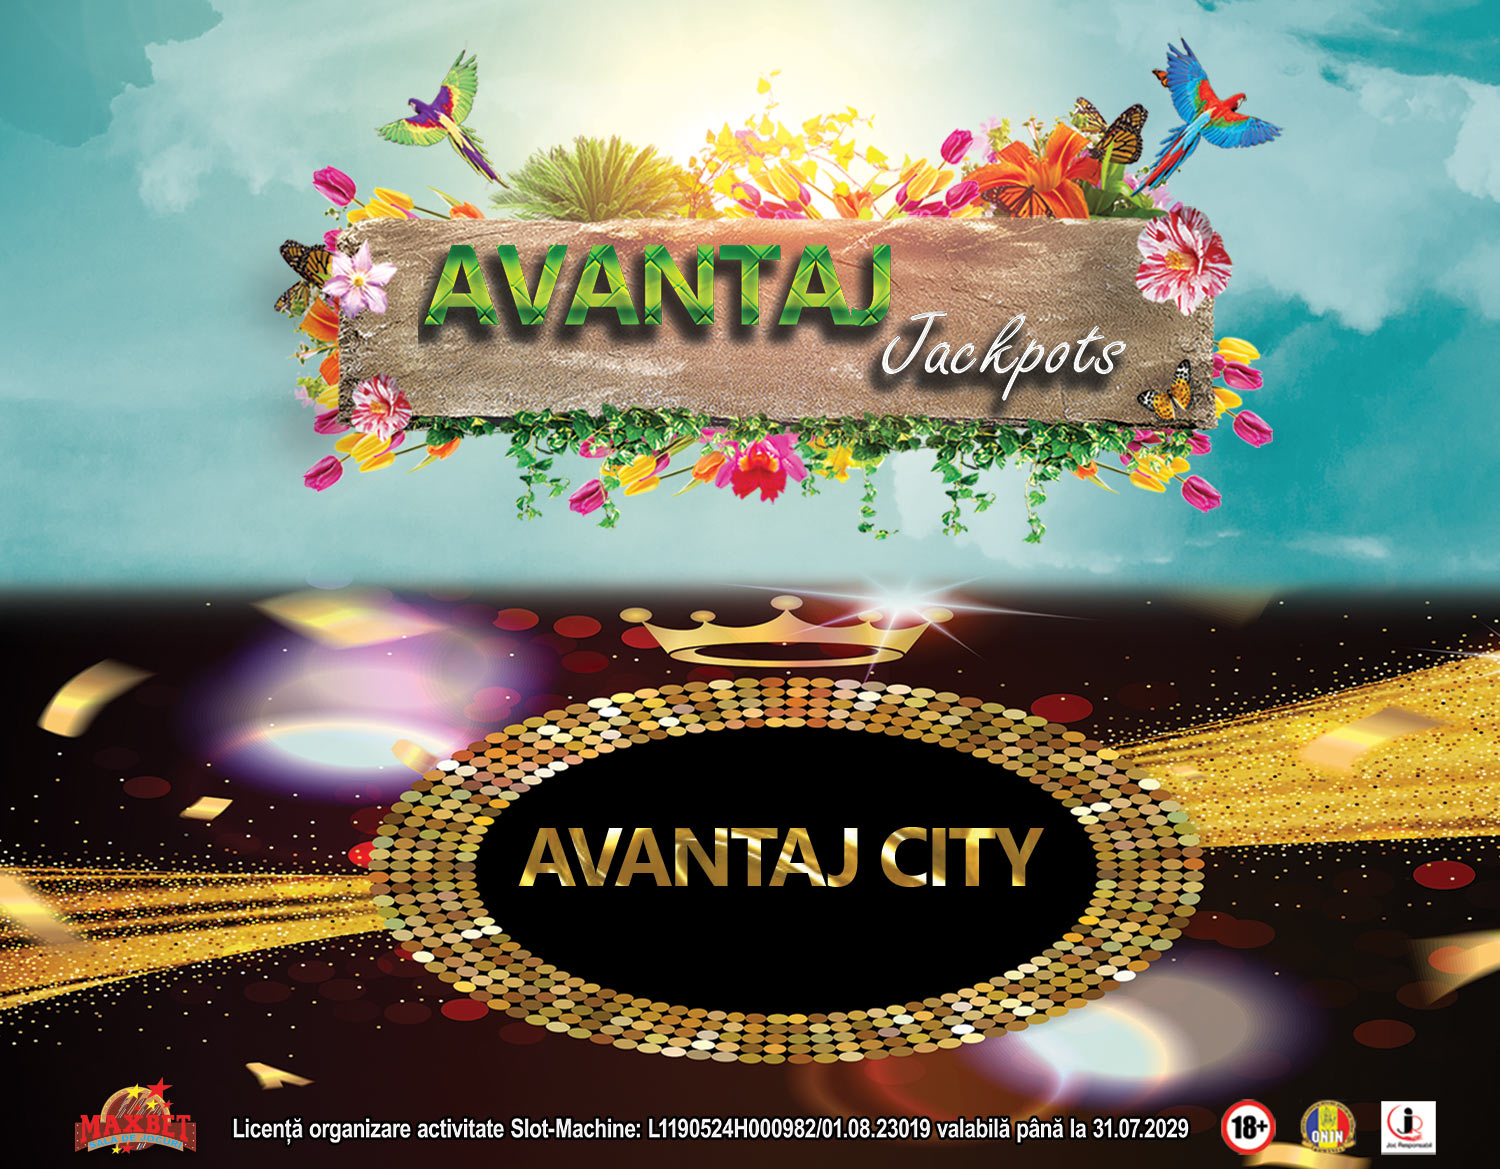 Avantaj City + Avantaj Jackpot